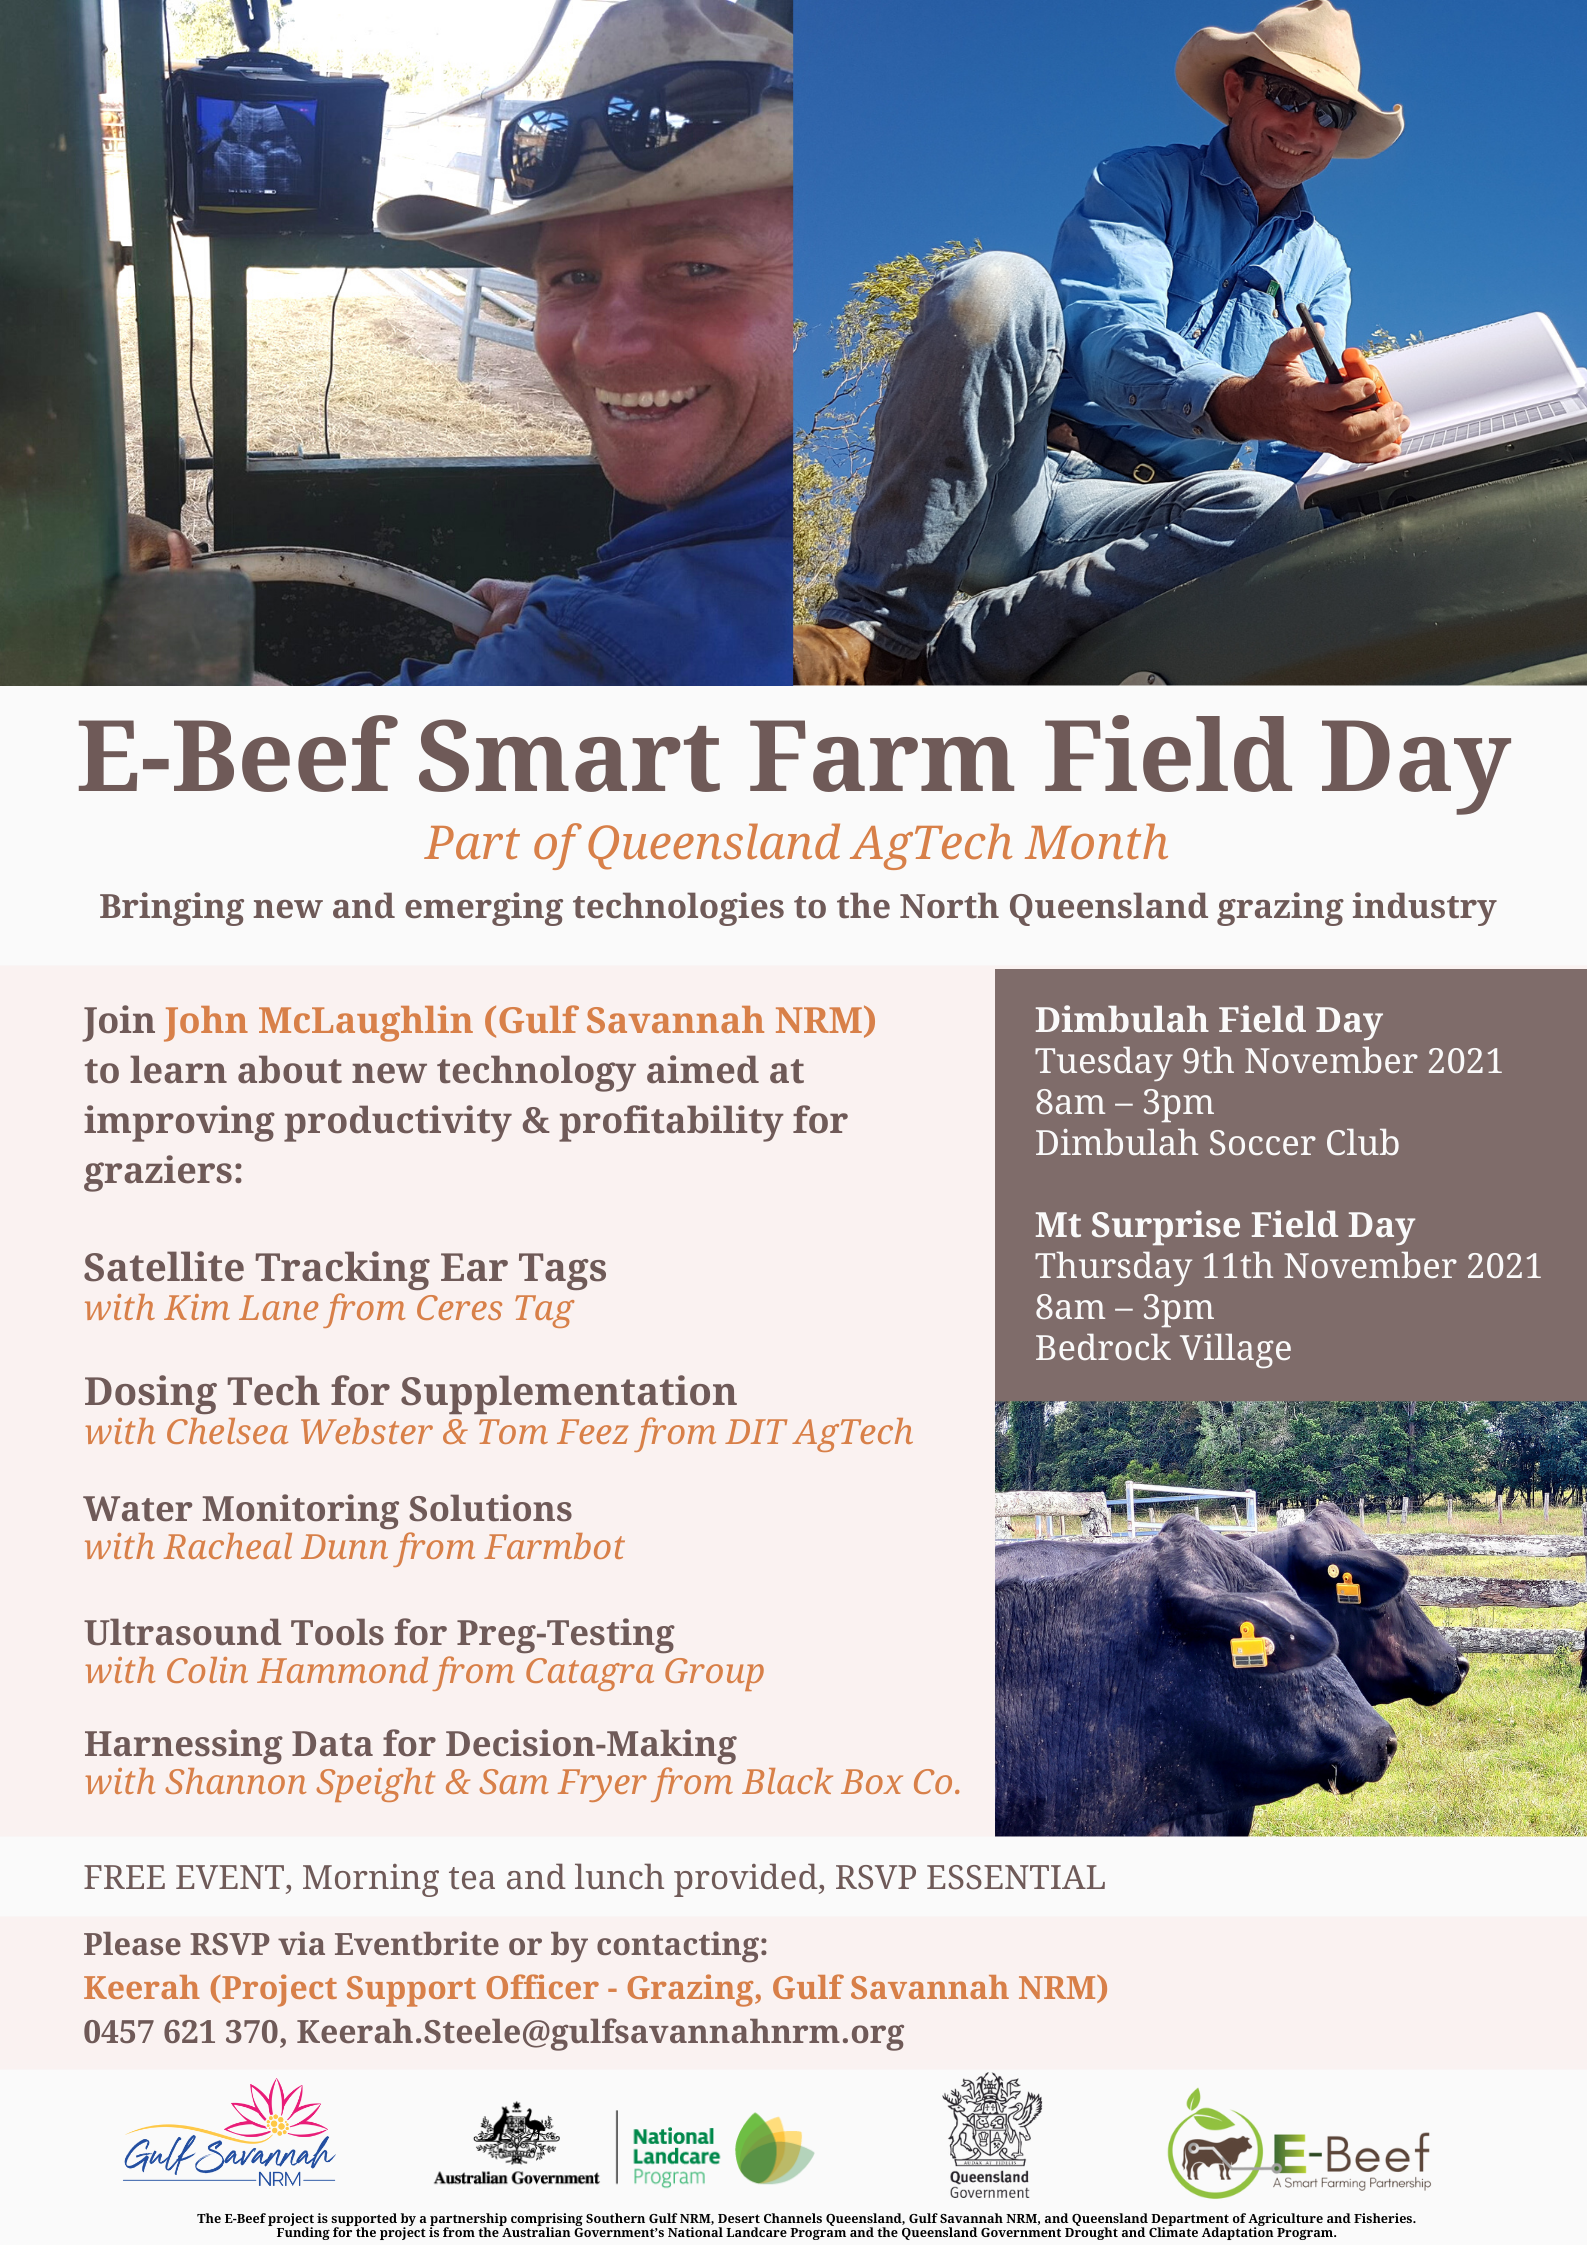 Mount Surprise E-Beef Smart Farm Field Day